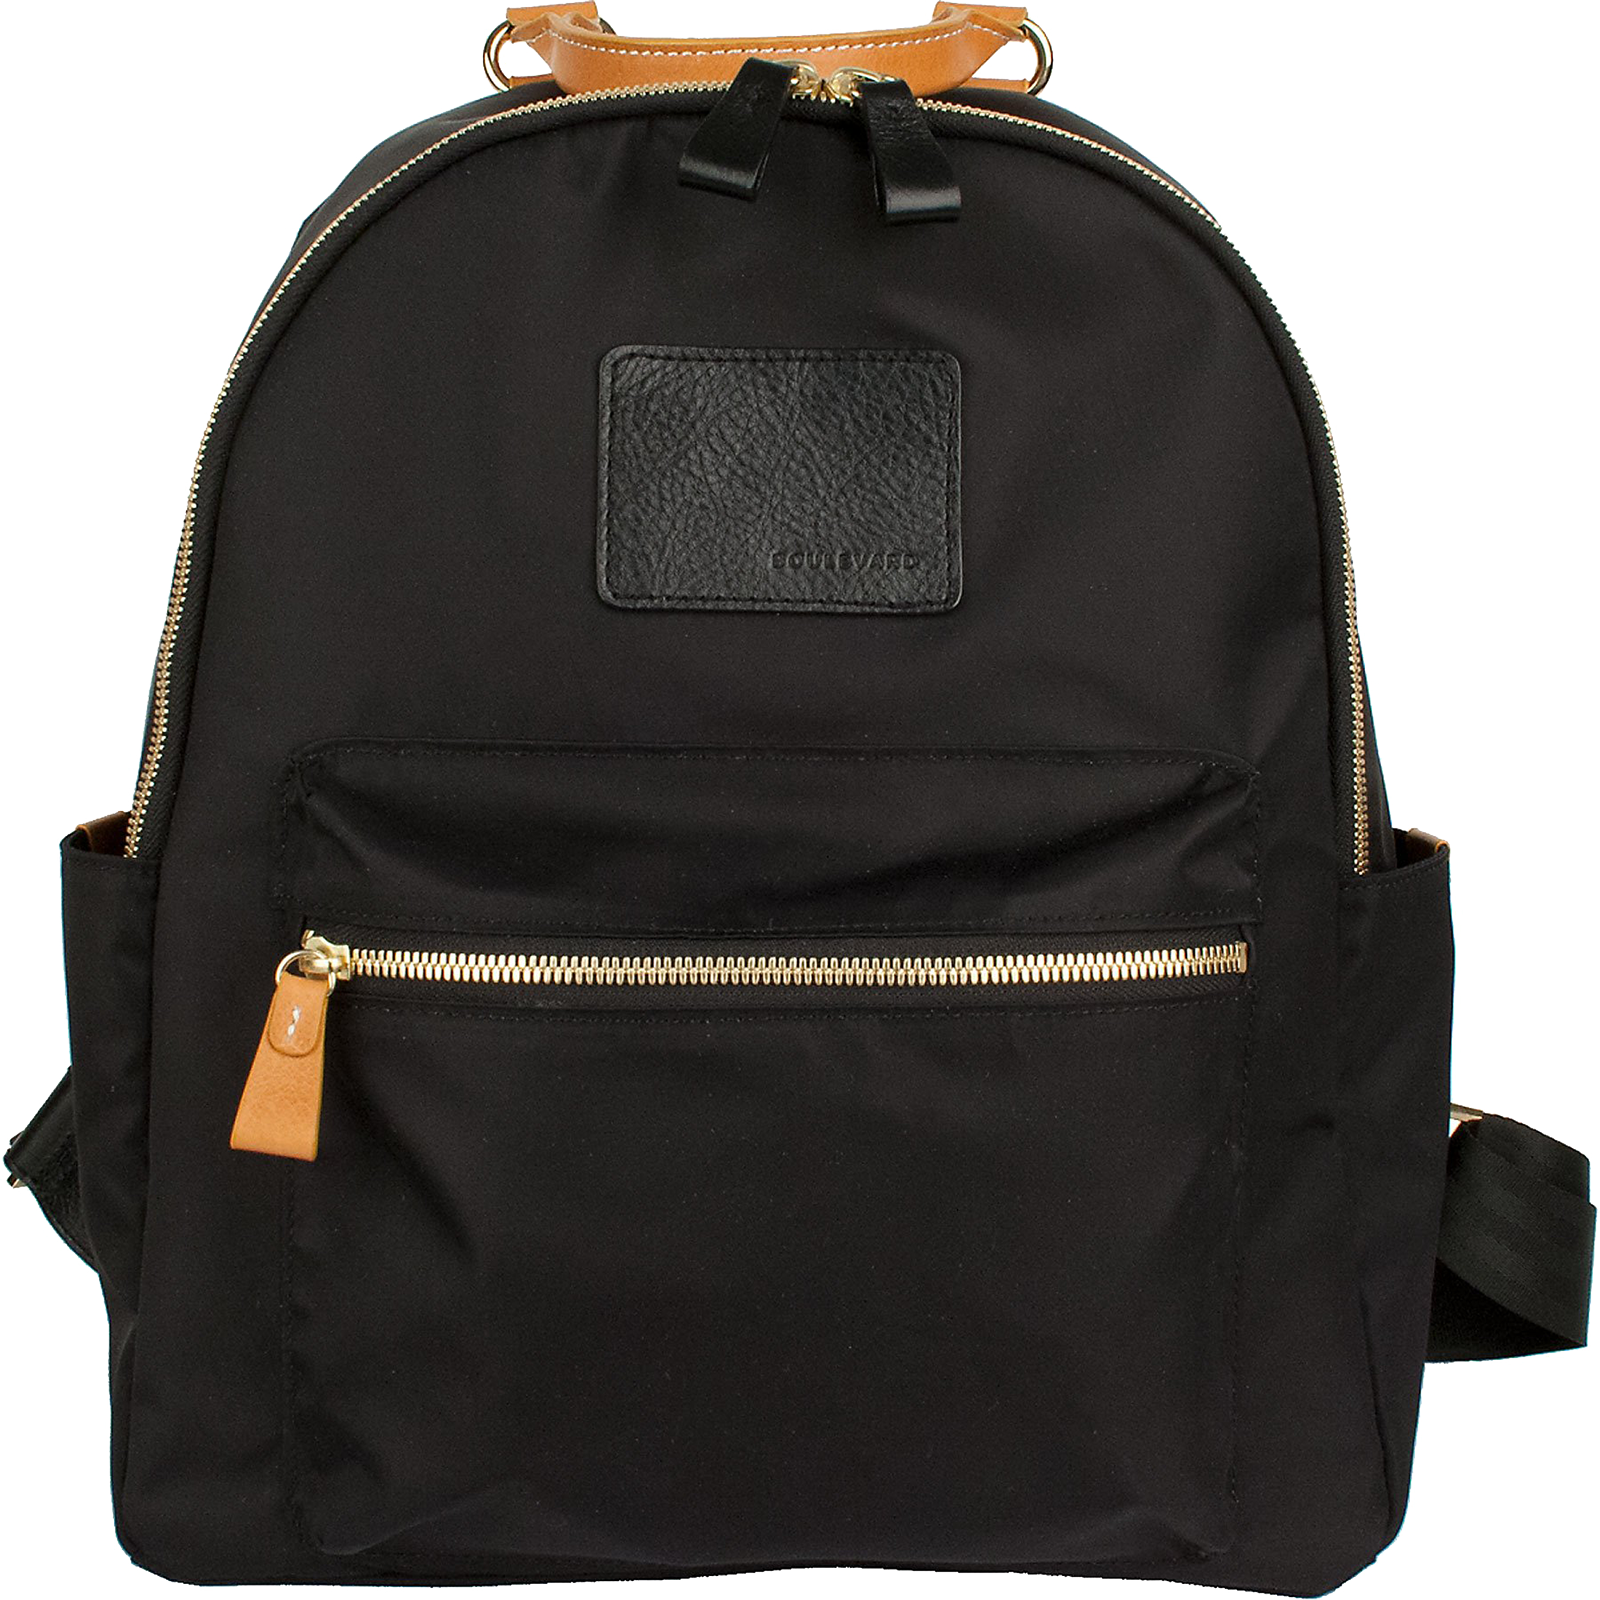 Brandy Nylon Backpack